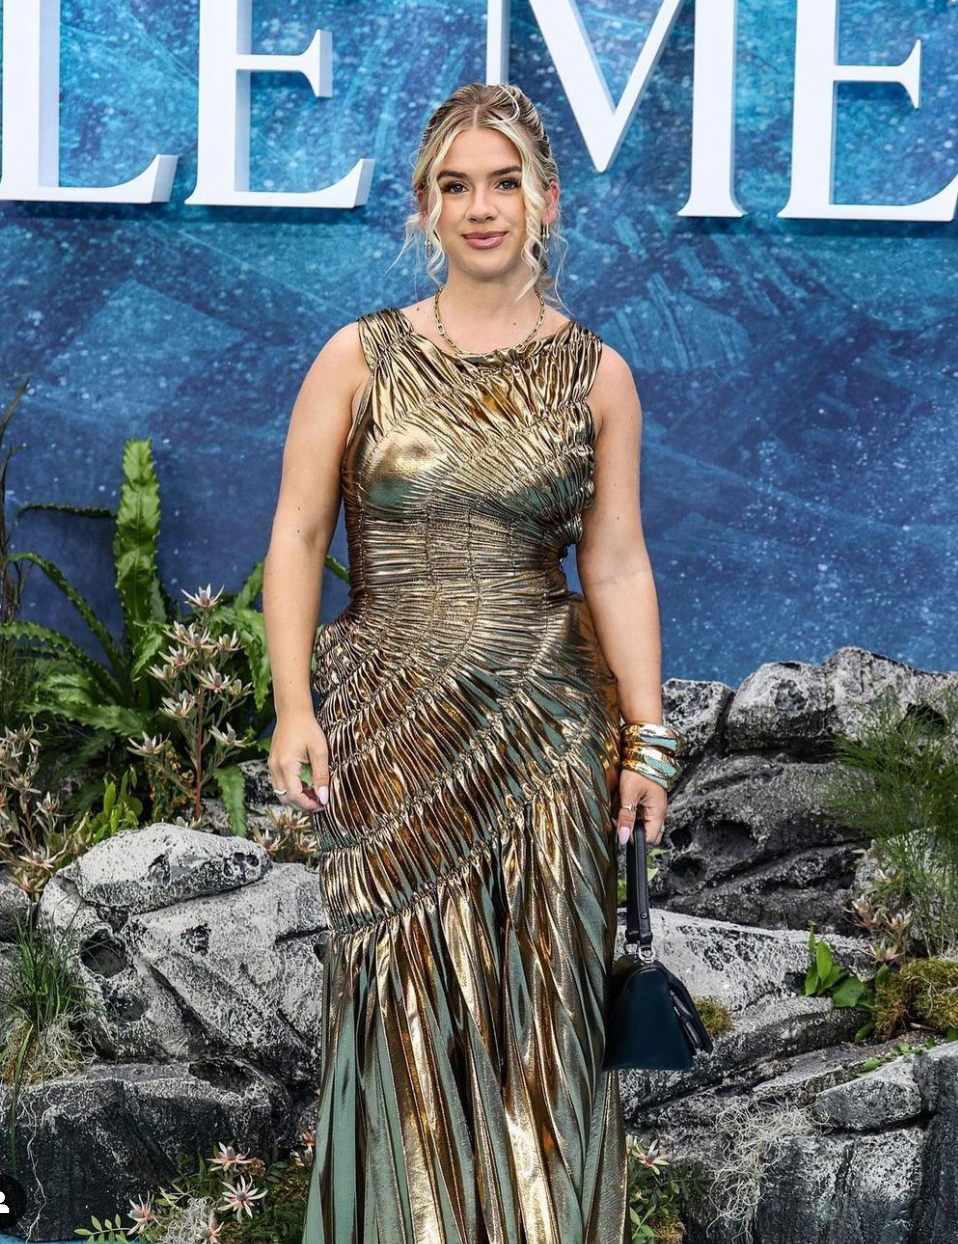 Grace Beverley wears the Fossil Dress to the Little Mermaid Premiere in London